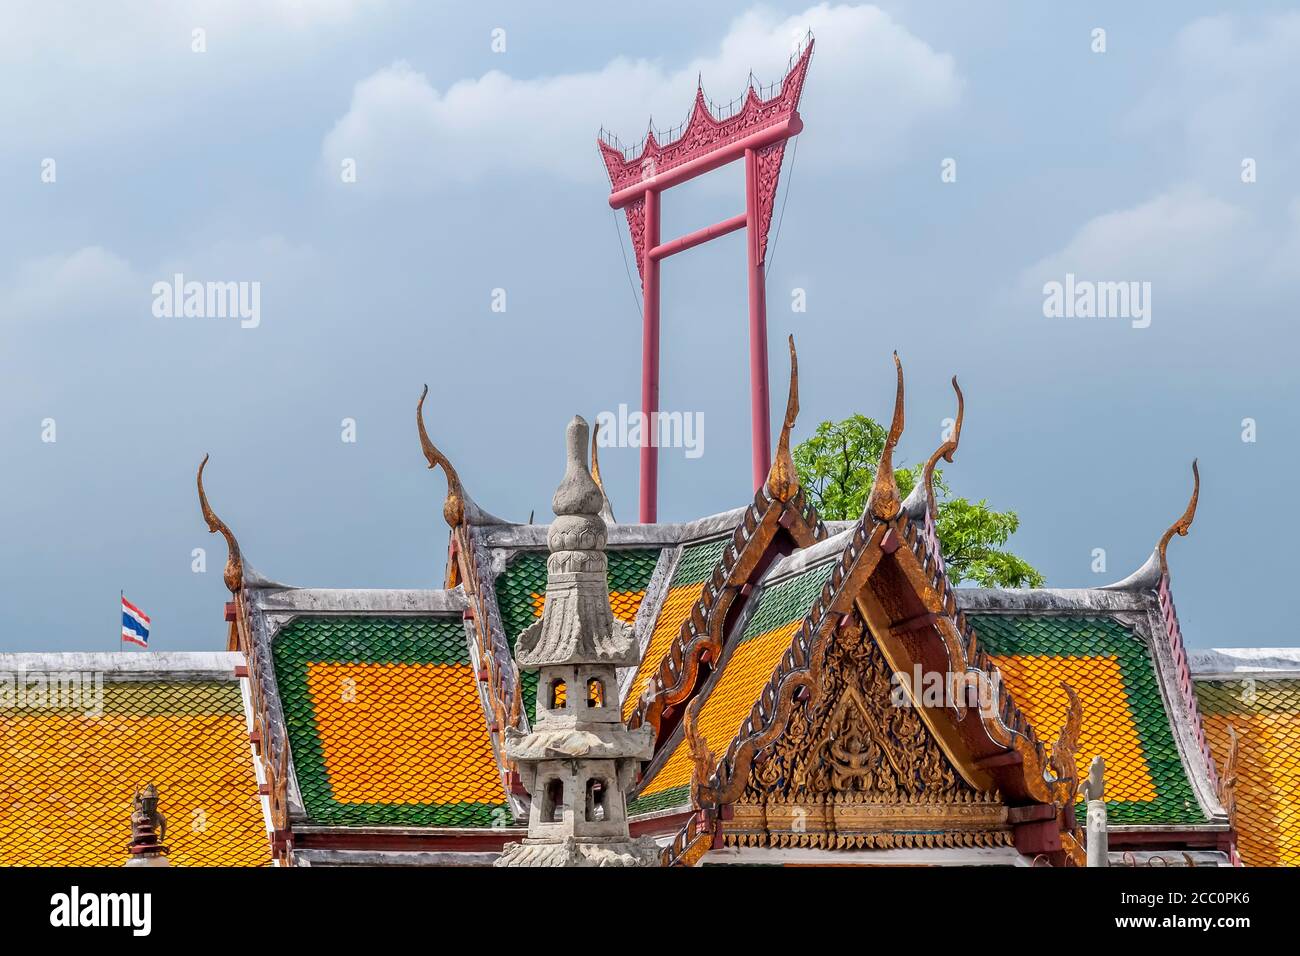 Hermoso detalle del templo budista de Sao Chingcha, el templo de Giant Swing, una estructura religiosa en el subdistrito de Sao Chingcha, distrito de Phra Nakhon, Foto de stock